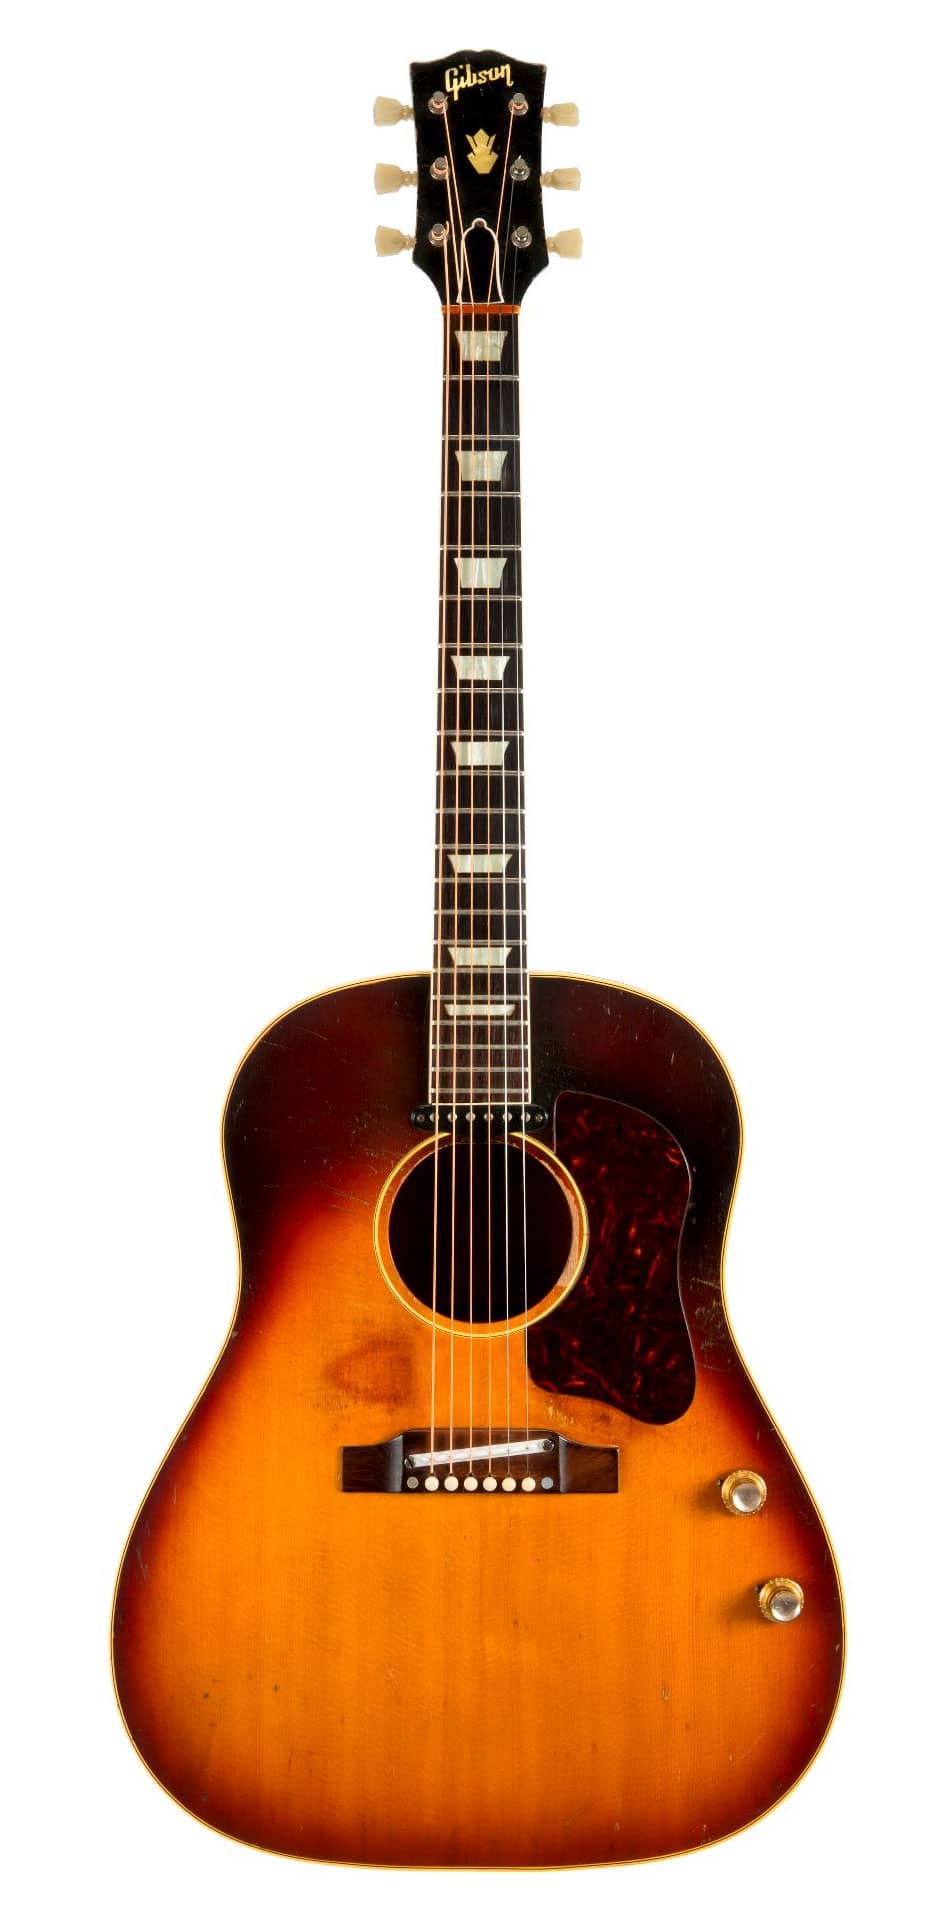 John Lennon's Gibson J-160E guitar sells for $2.41 million | The